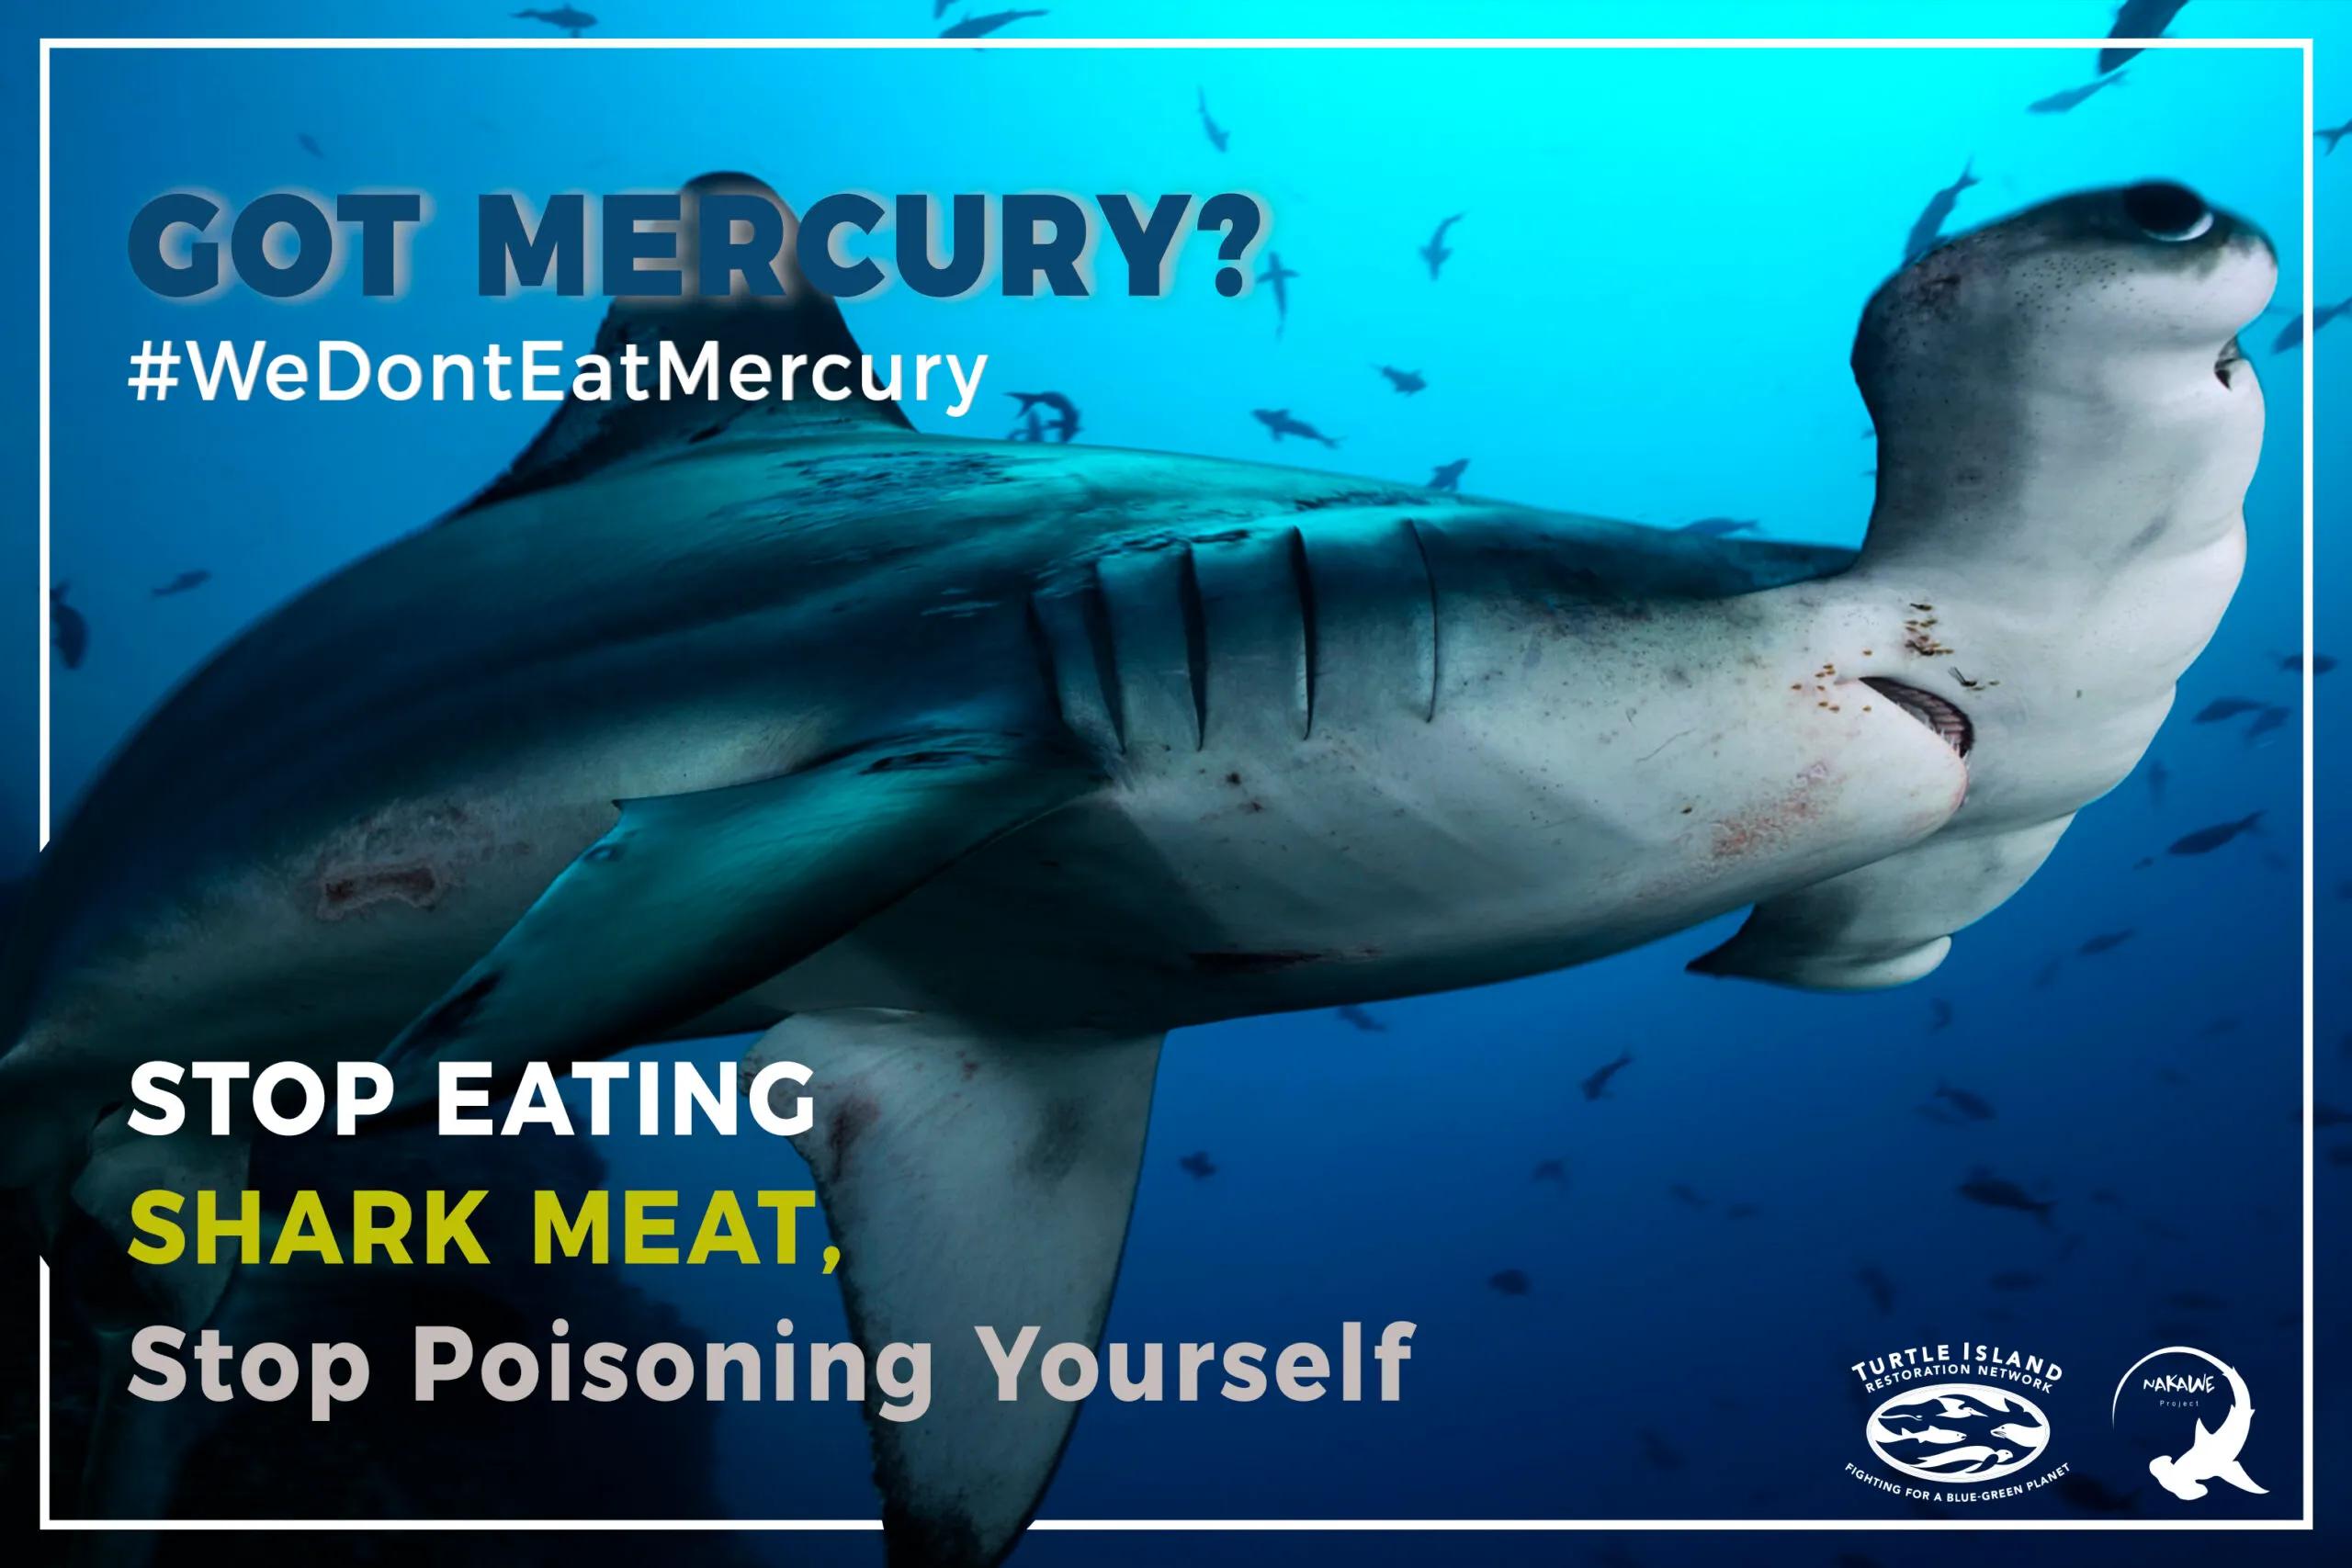 carne de tiburon ballena - Cómo se le llama a la carne de tiburón